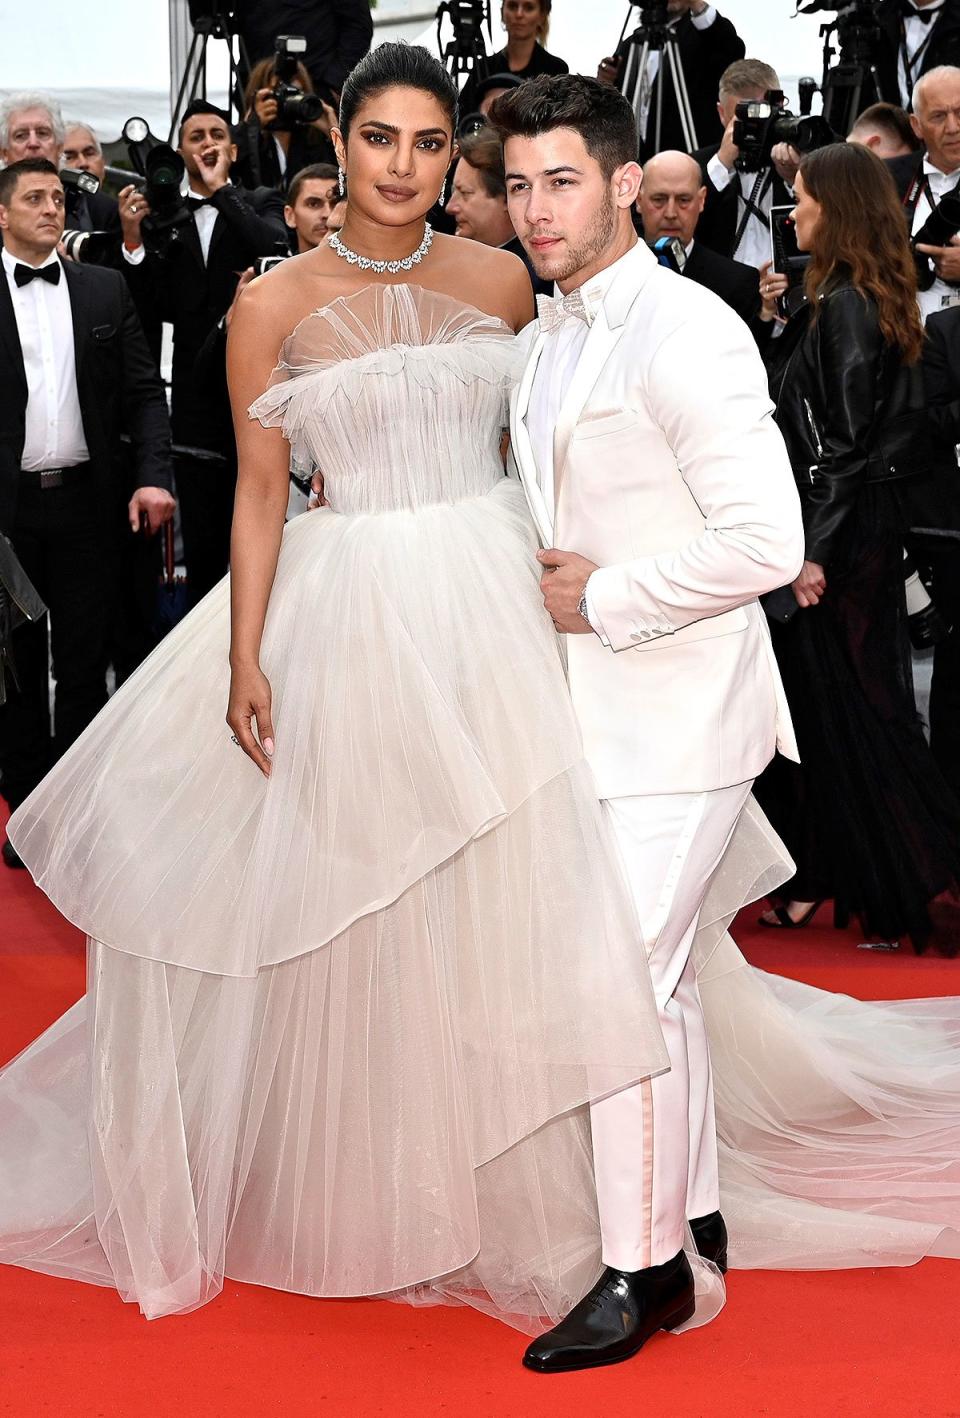 The Best Dressed Couple: Priyanka Chopra Jonas and Nick Jonas